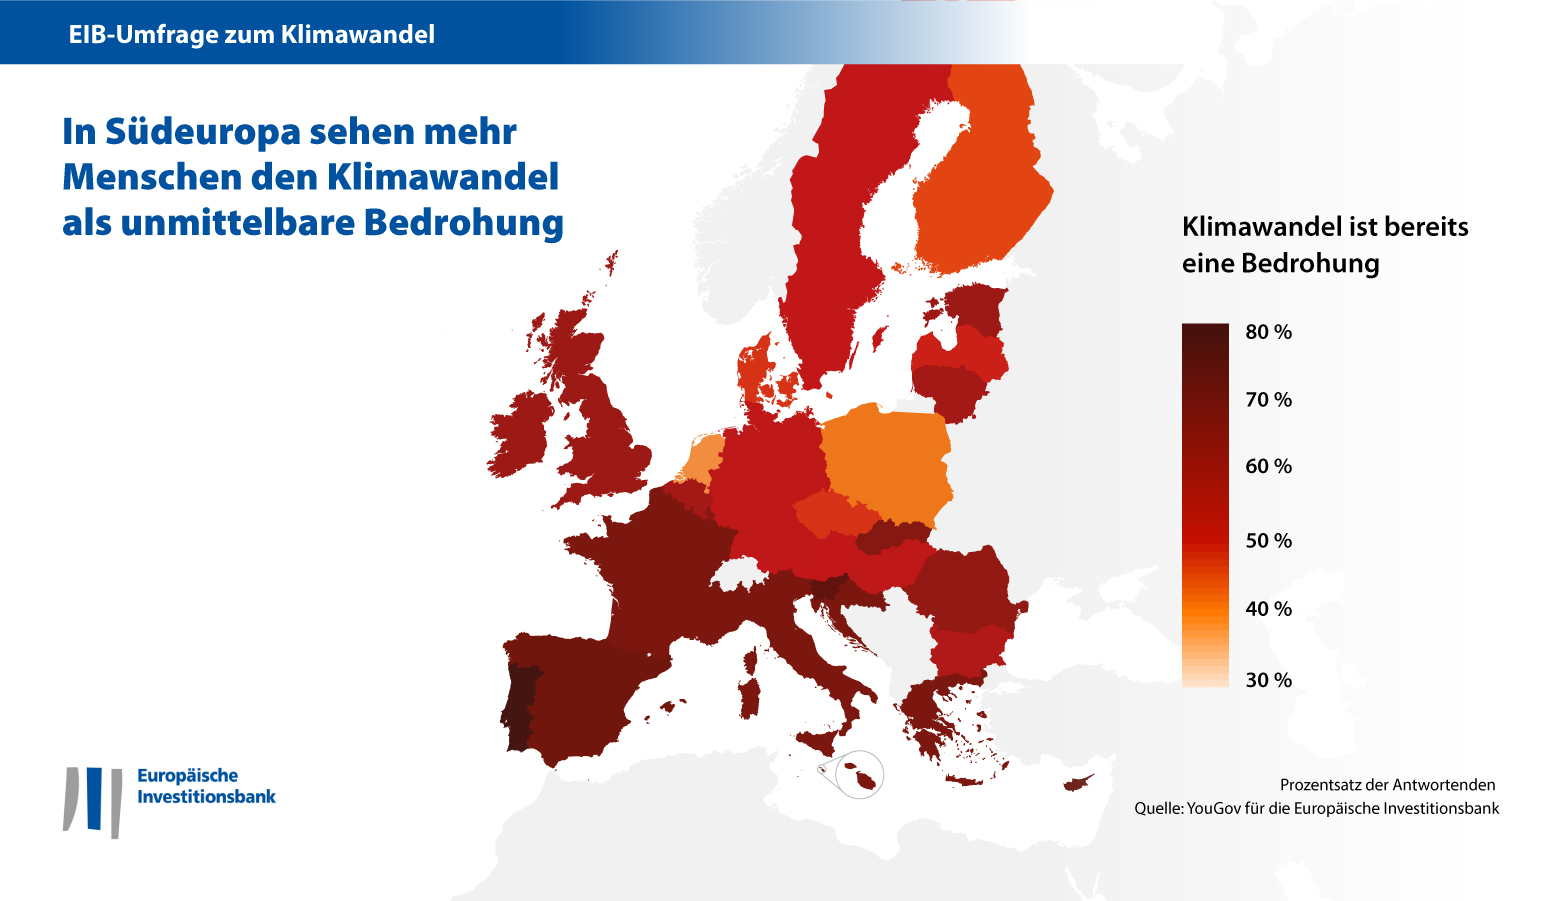 EIB climate survey